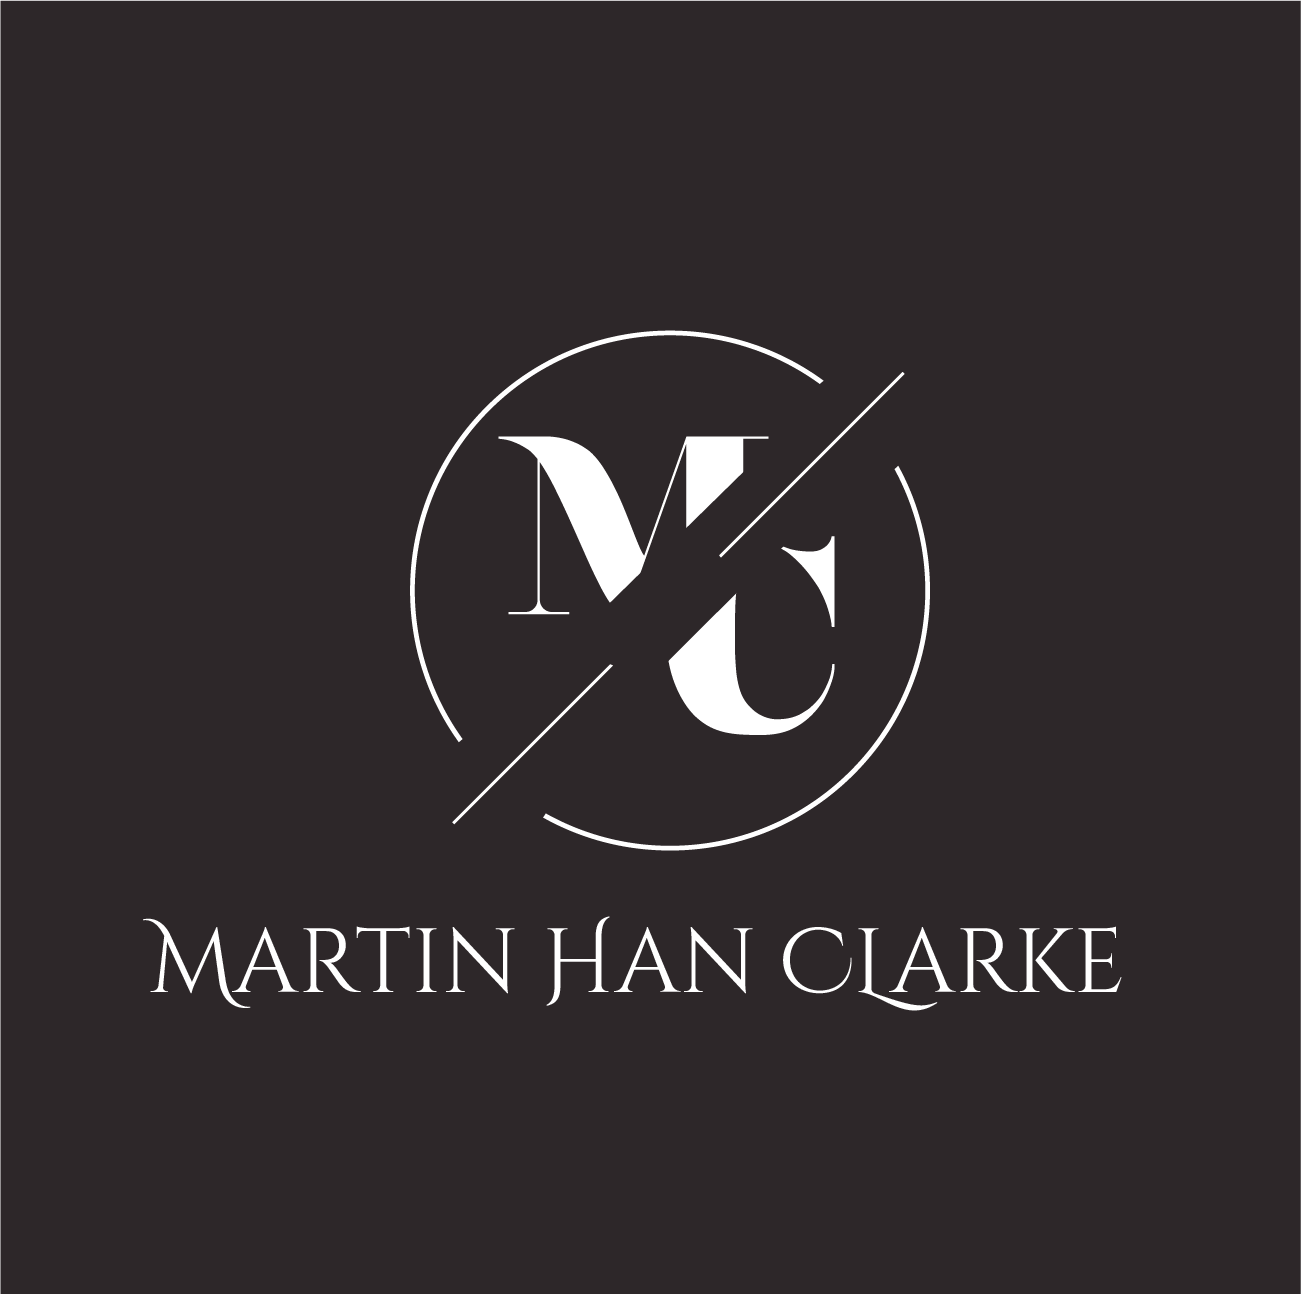  MARTIN HAN CLARKE